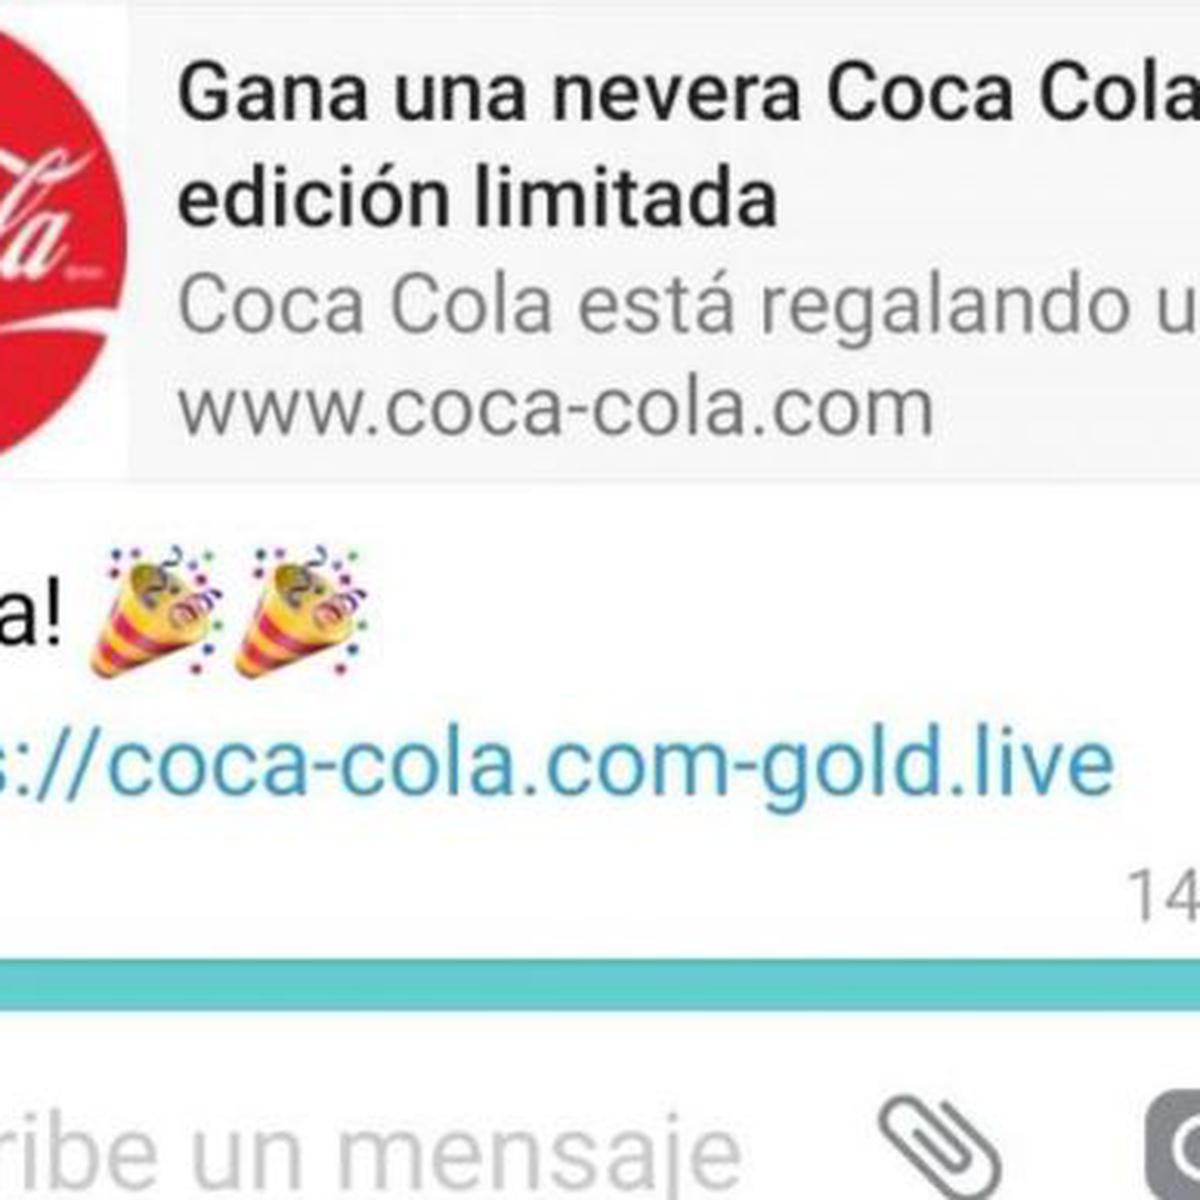 Te ha llegado el mensaje de las neveras de Coca Cola por Whatsapp